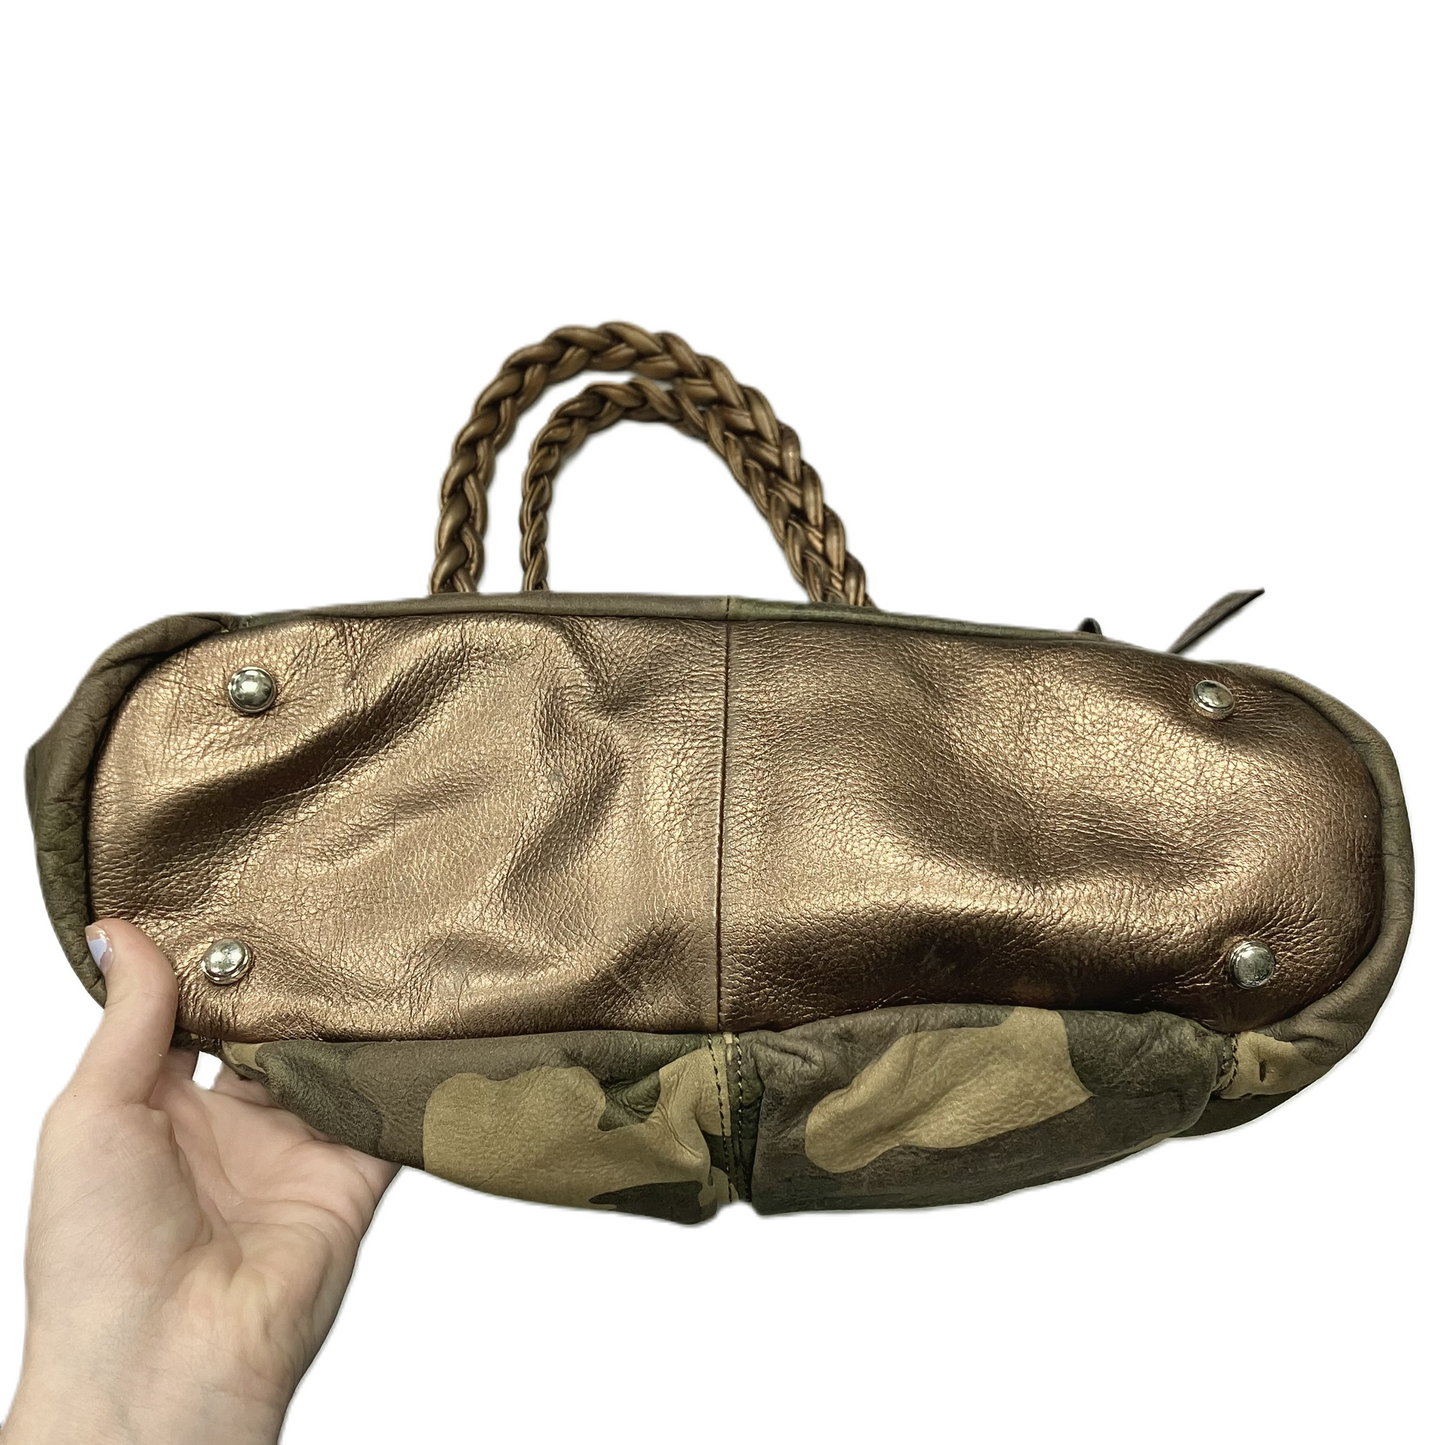 Handbag Designer By B. Makowsky  Size: Medium